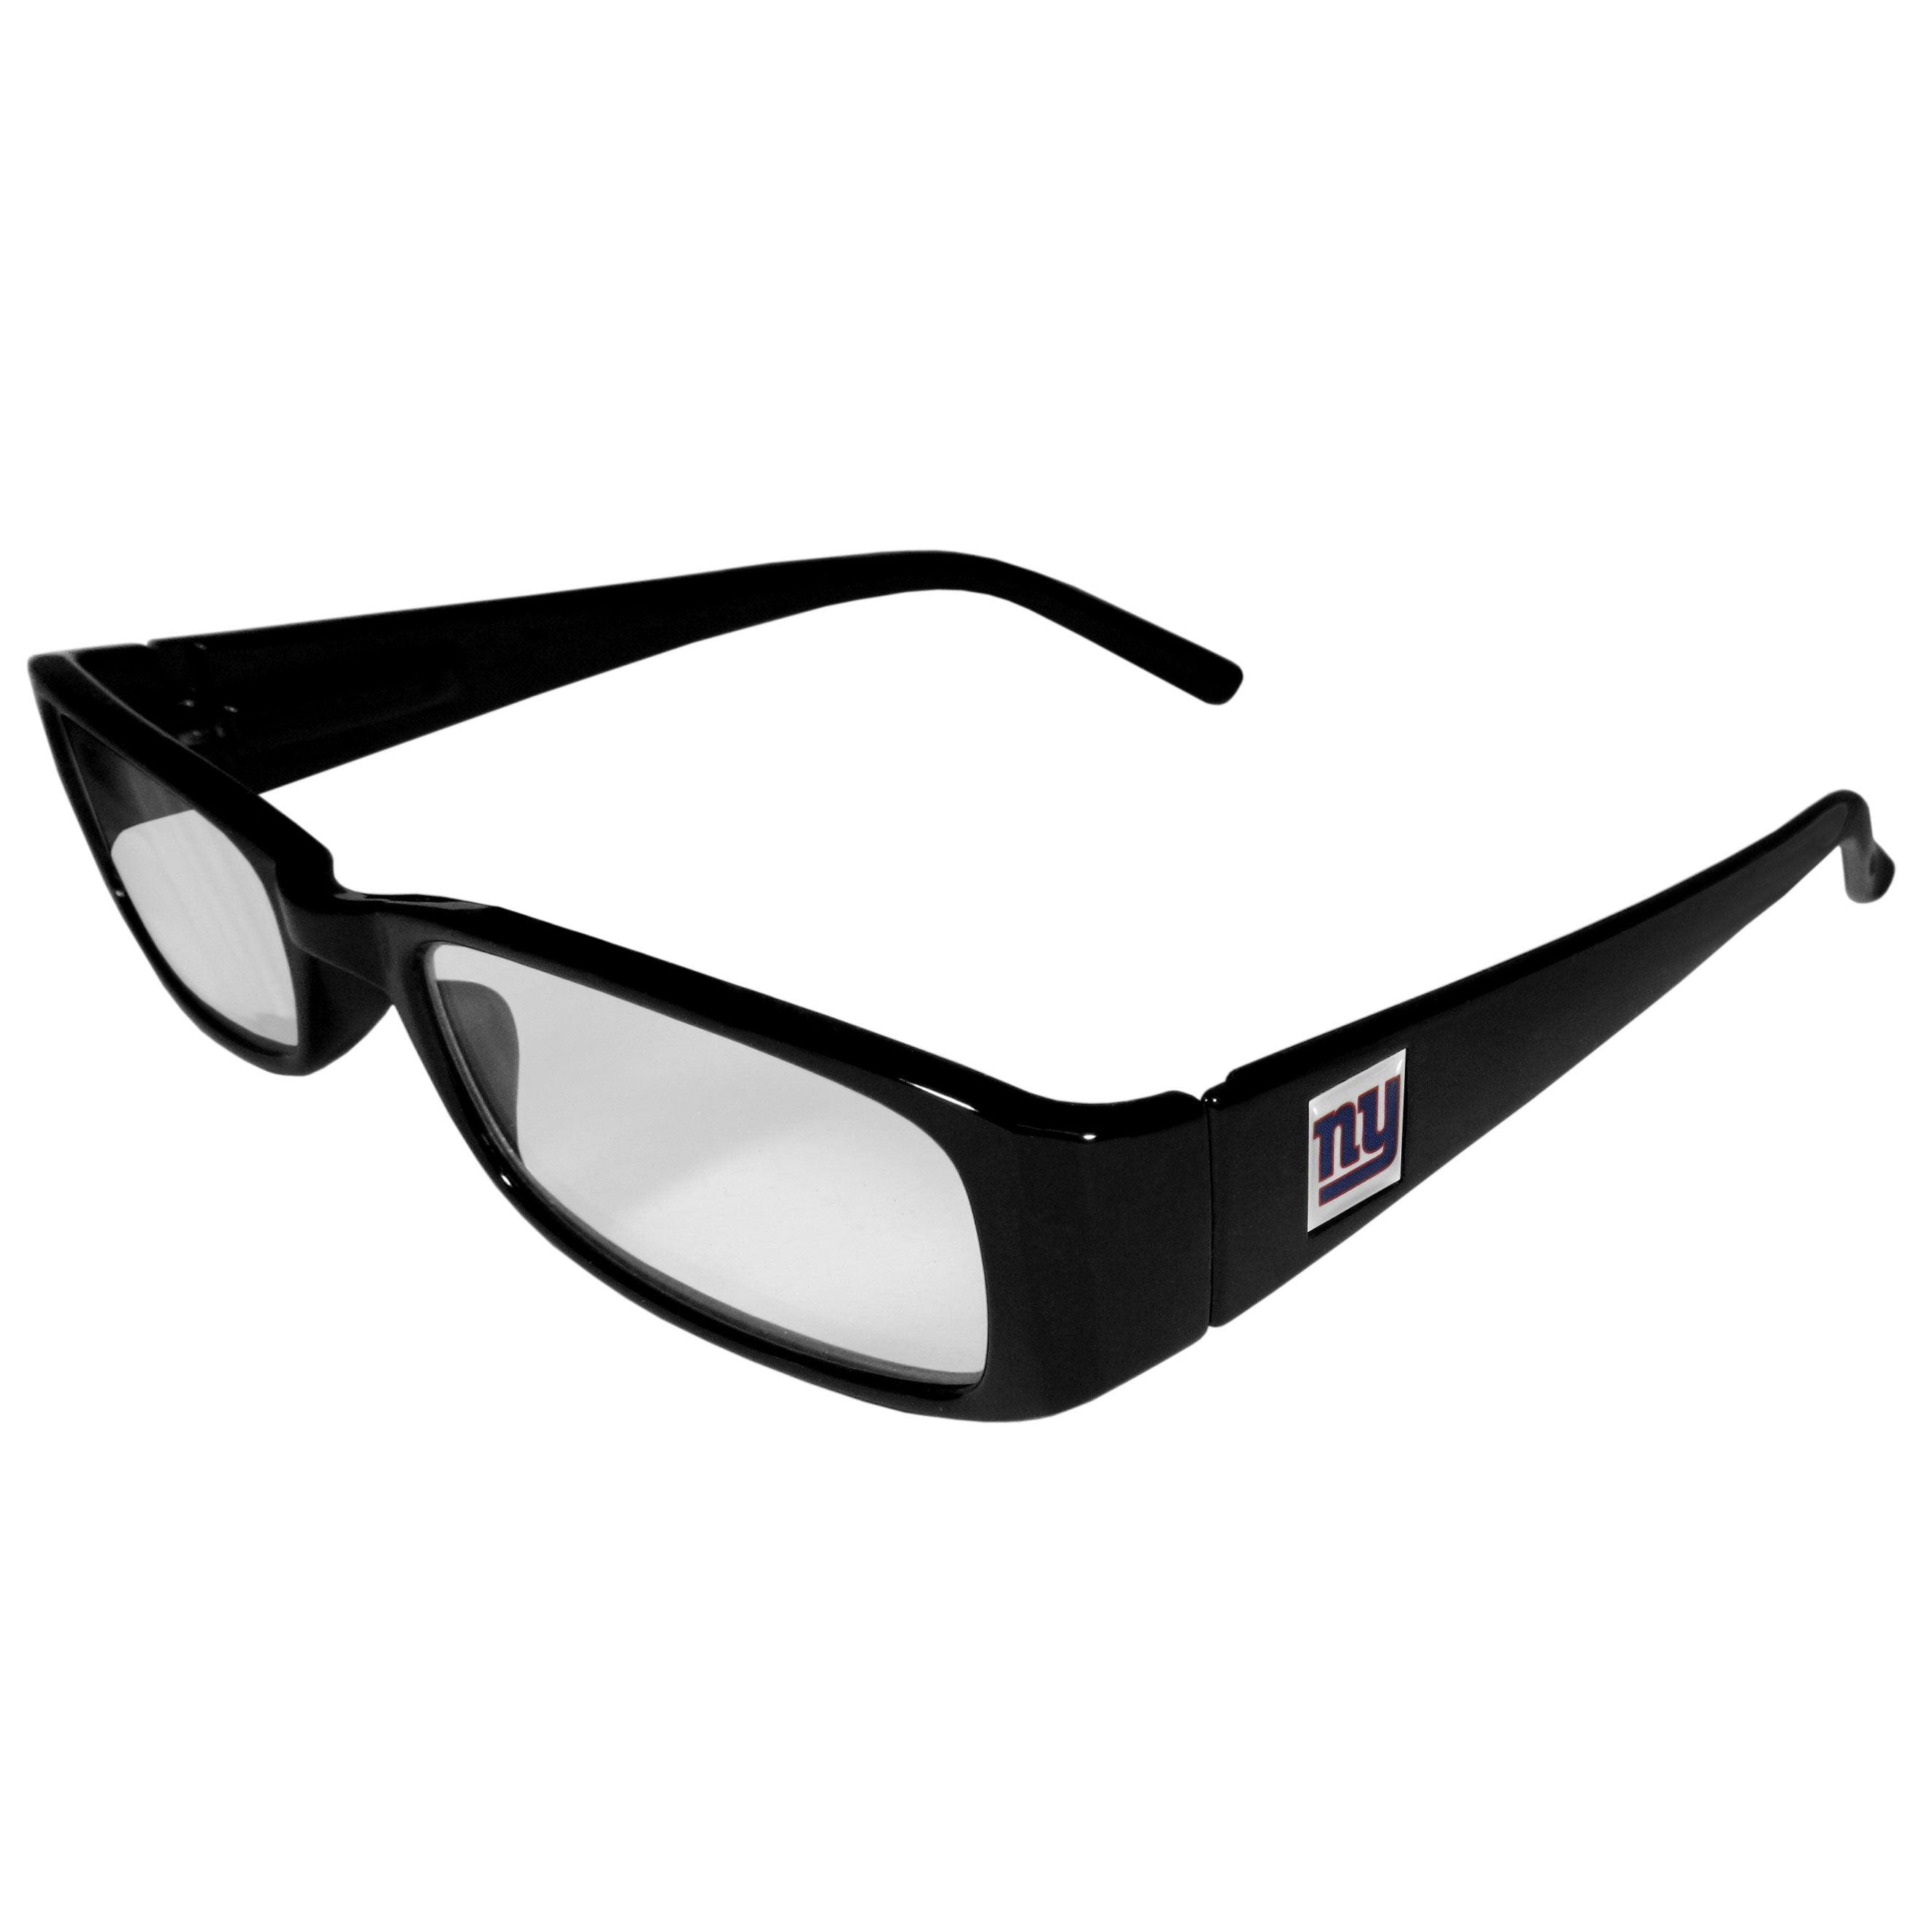 New York Giants Black Reading Glasses +1.75 - Flyclothing LLC